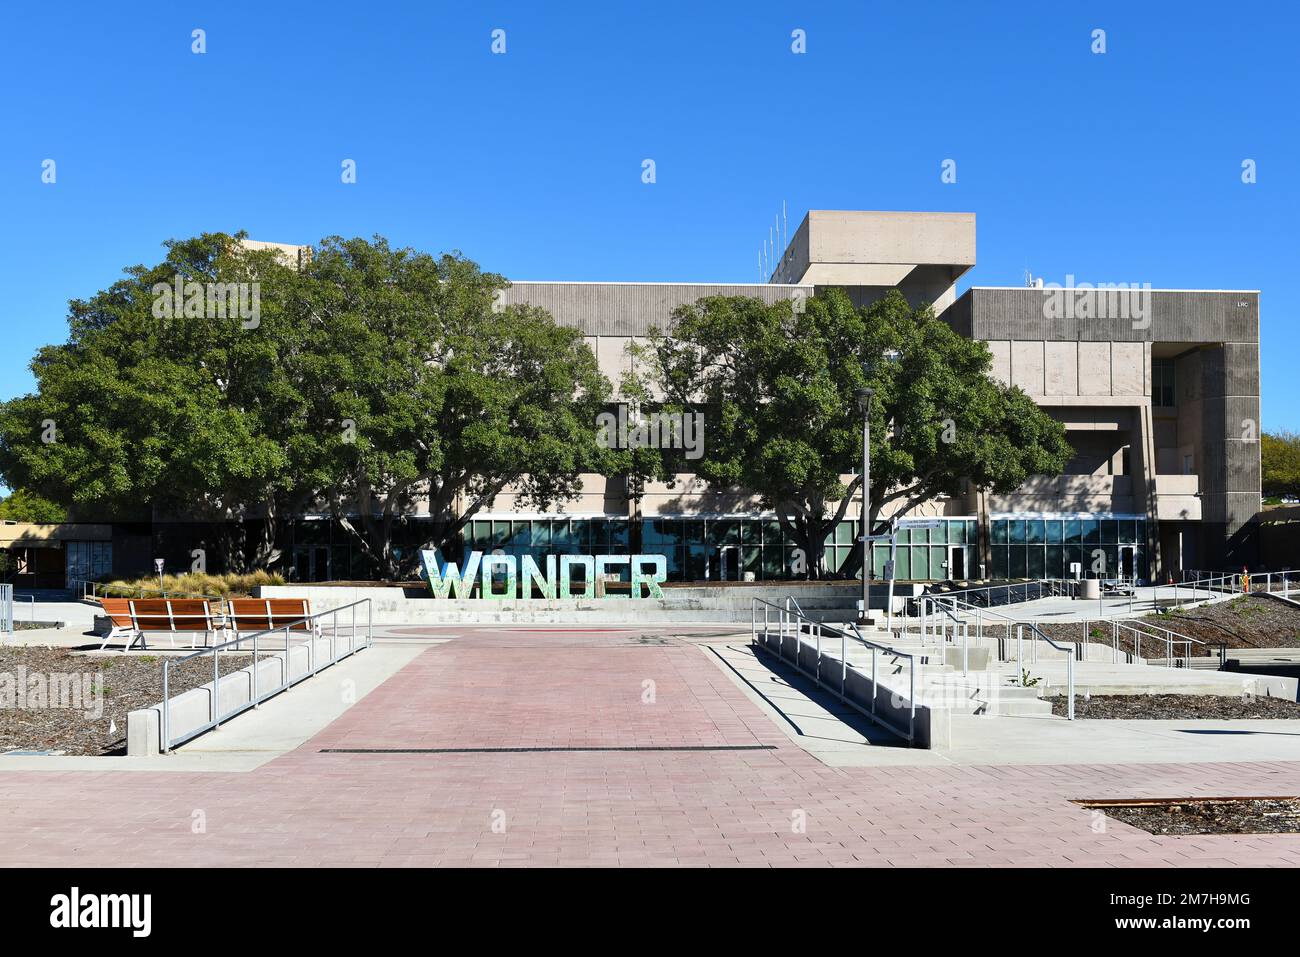 MISSION VIEJO, KALIFORNIEN - 8. JANUAR 2023: Amphitheater mit der Wonder Sculpture and Library auf dem Campus des Saddleback College. Stockfoto